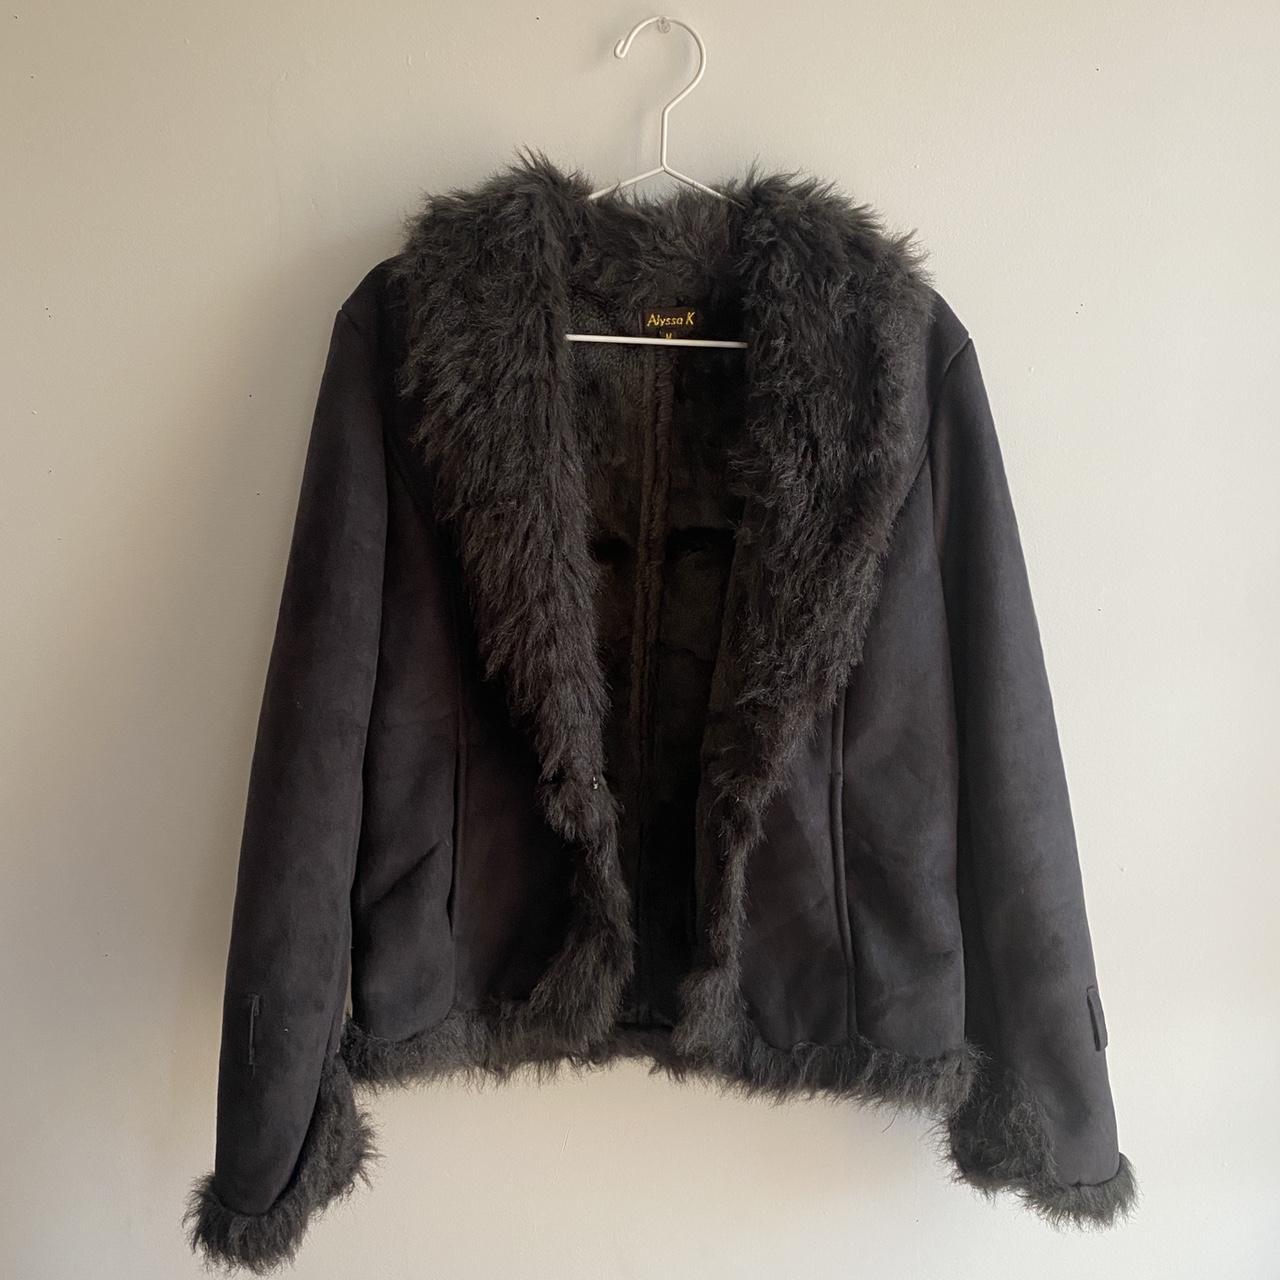 Vintage black penny lane / afghan coat. Inside and... - Depop